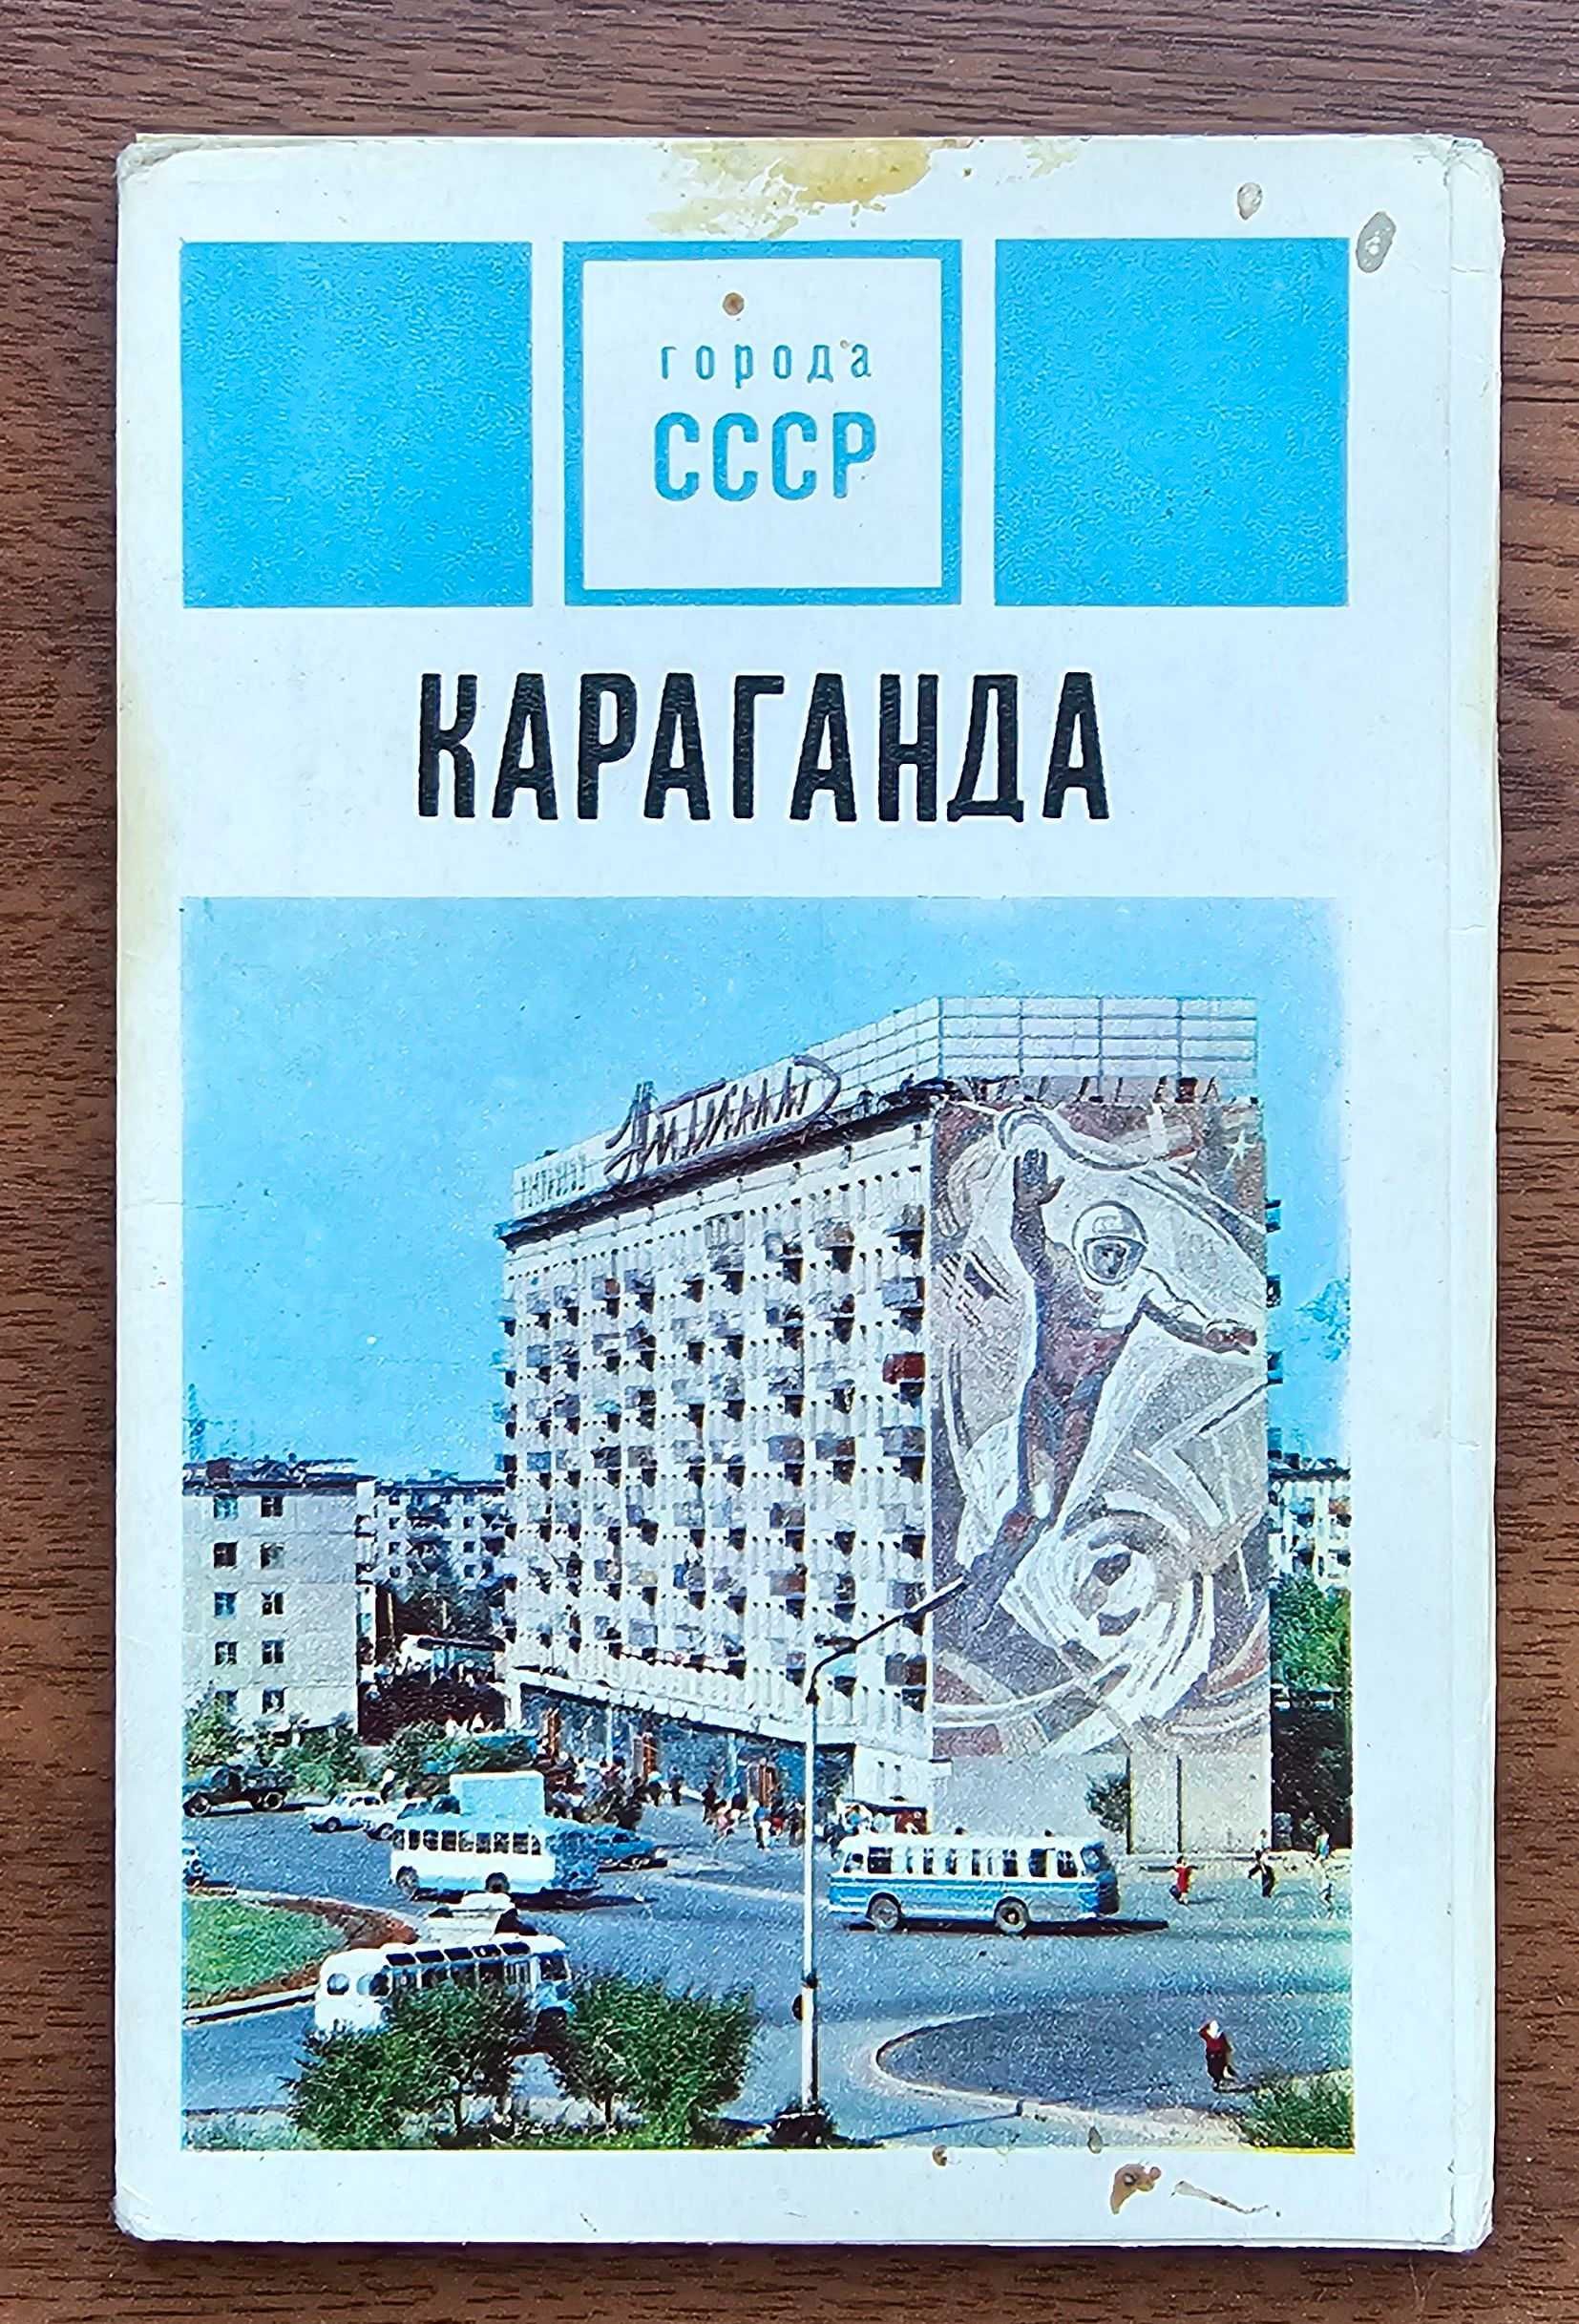 Наборы открыток Семипалатинск и Караганда